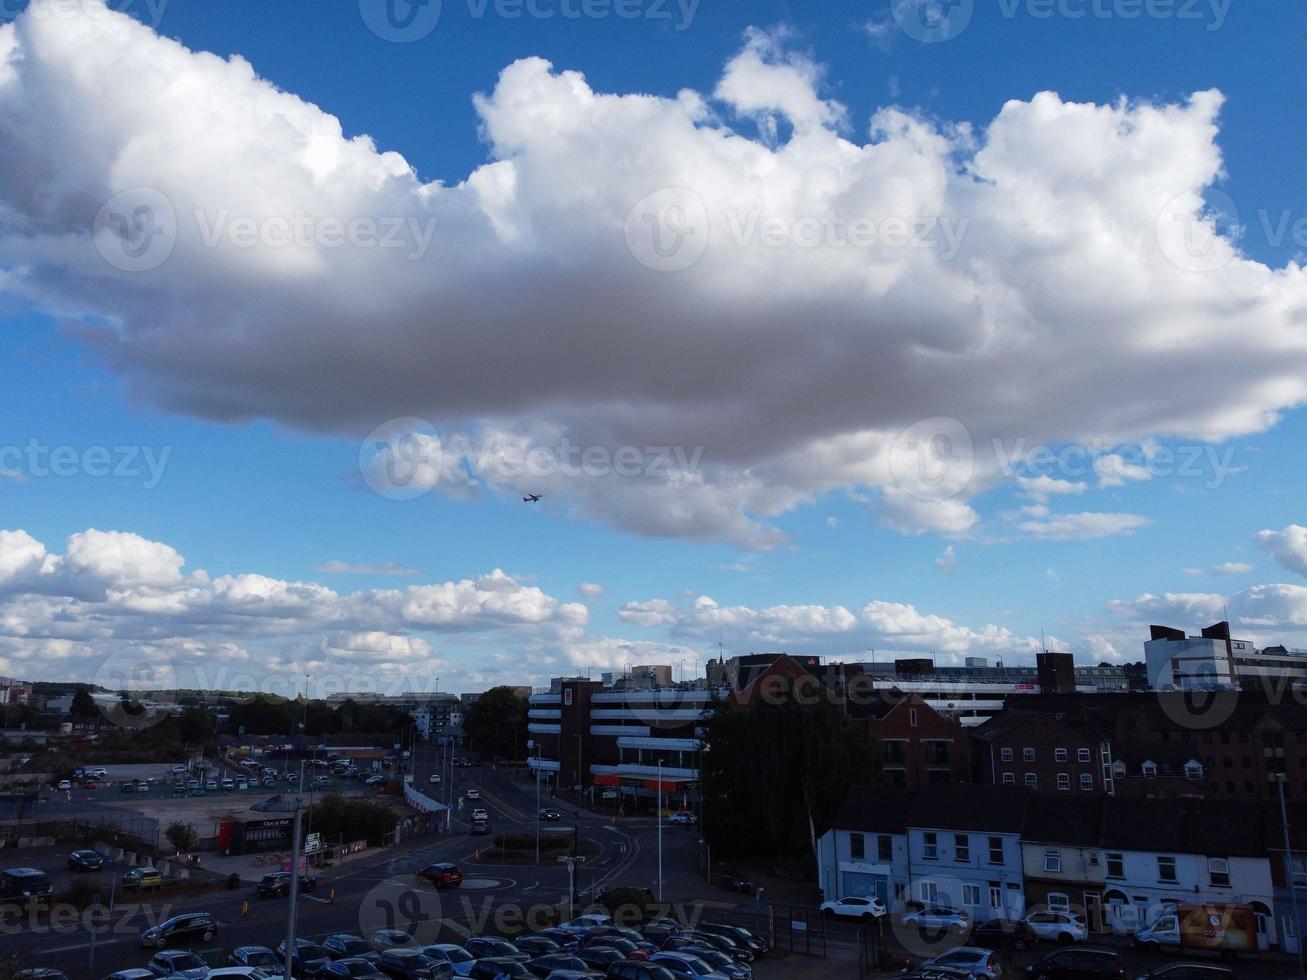 ville de luton en angleterre royaume-uni. vue aérienne du centre-ville depuis la gare et le campus universitaire du bedfordshire. la vue en grand angle a été capturée le 02 août 2022 par une chaude journée ensoleillée photo